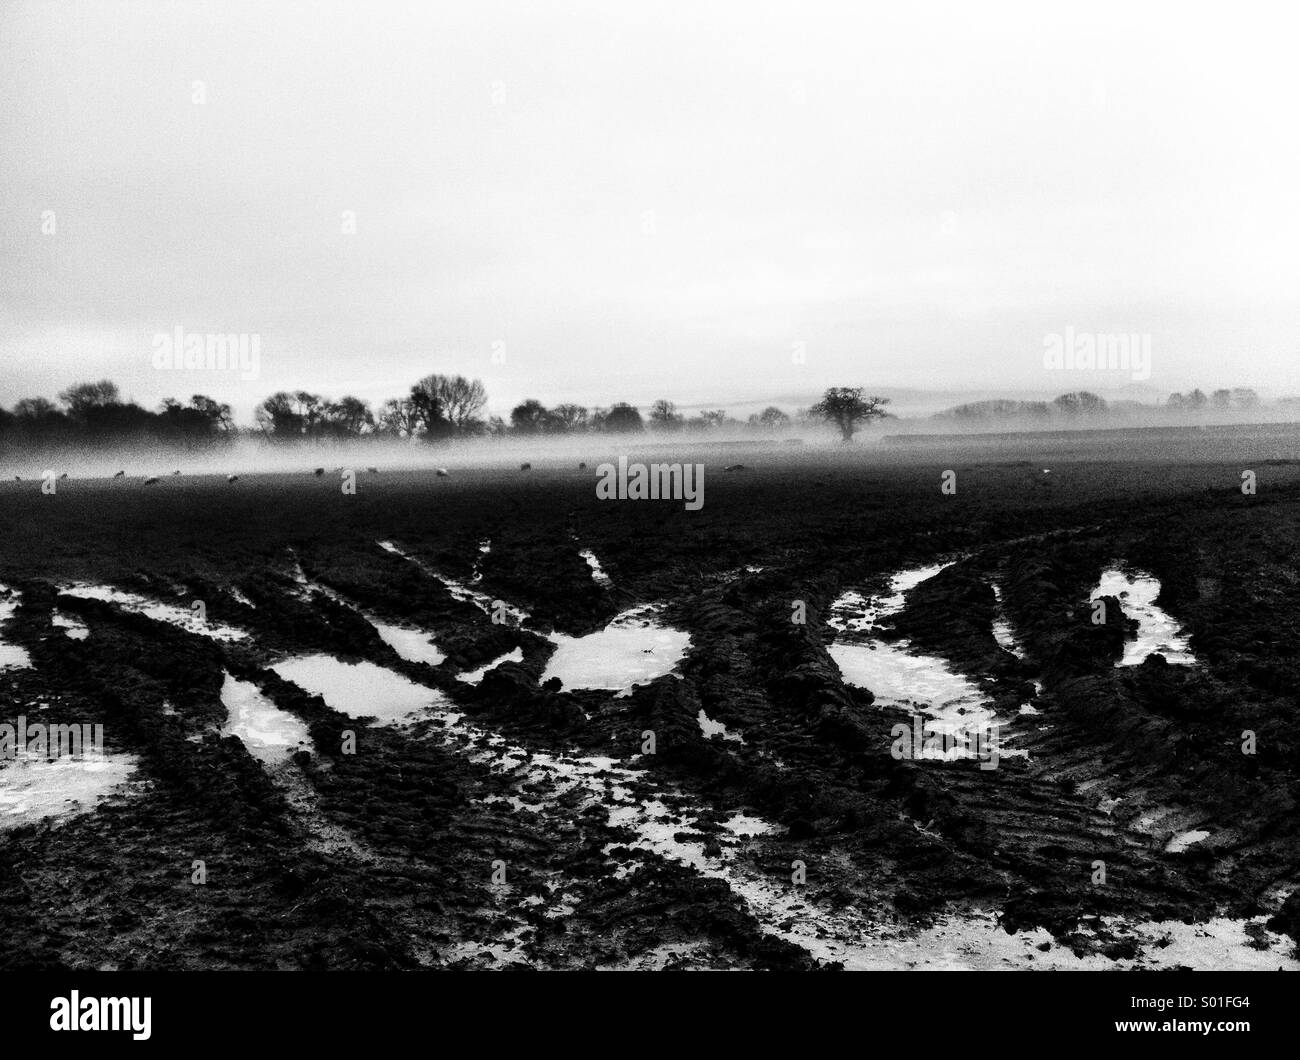 Muddy field on a misty day Stock Photo